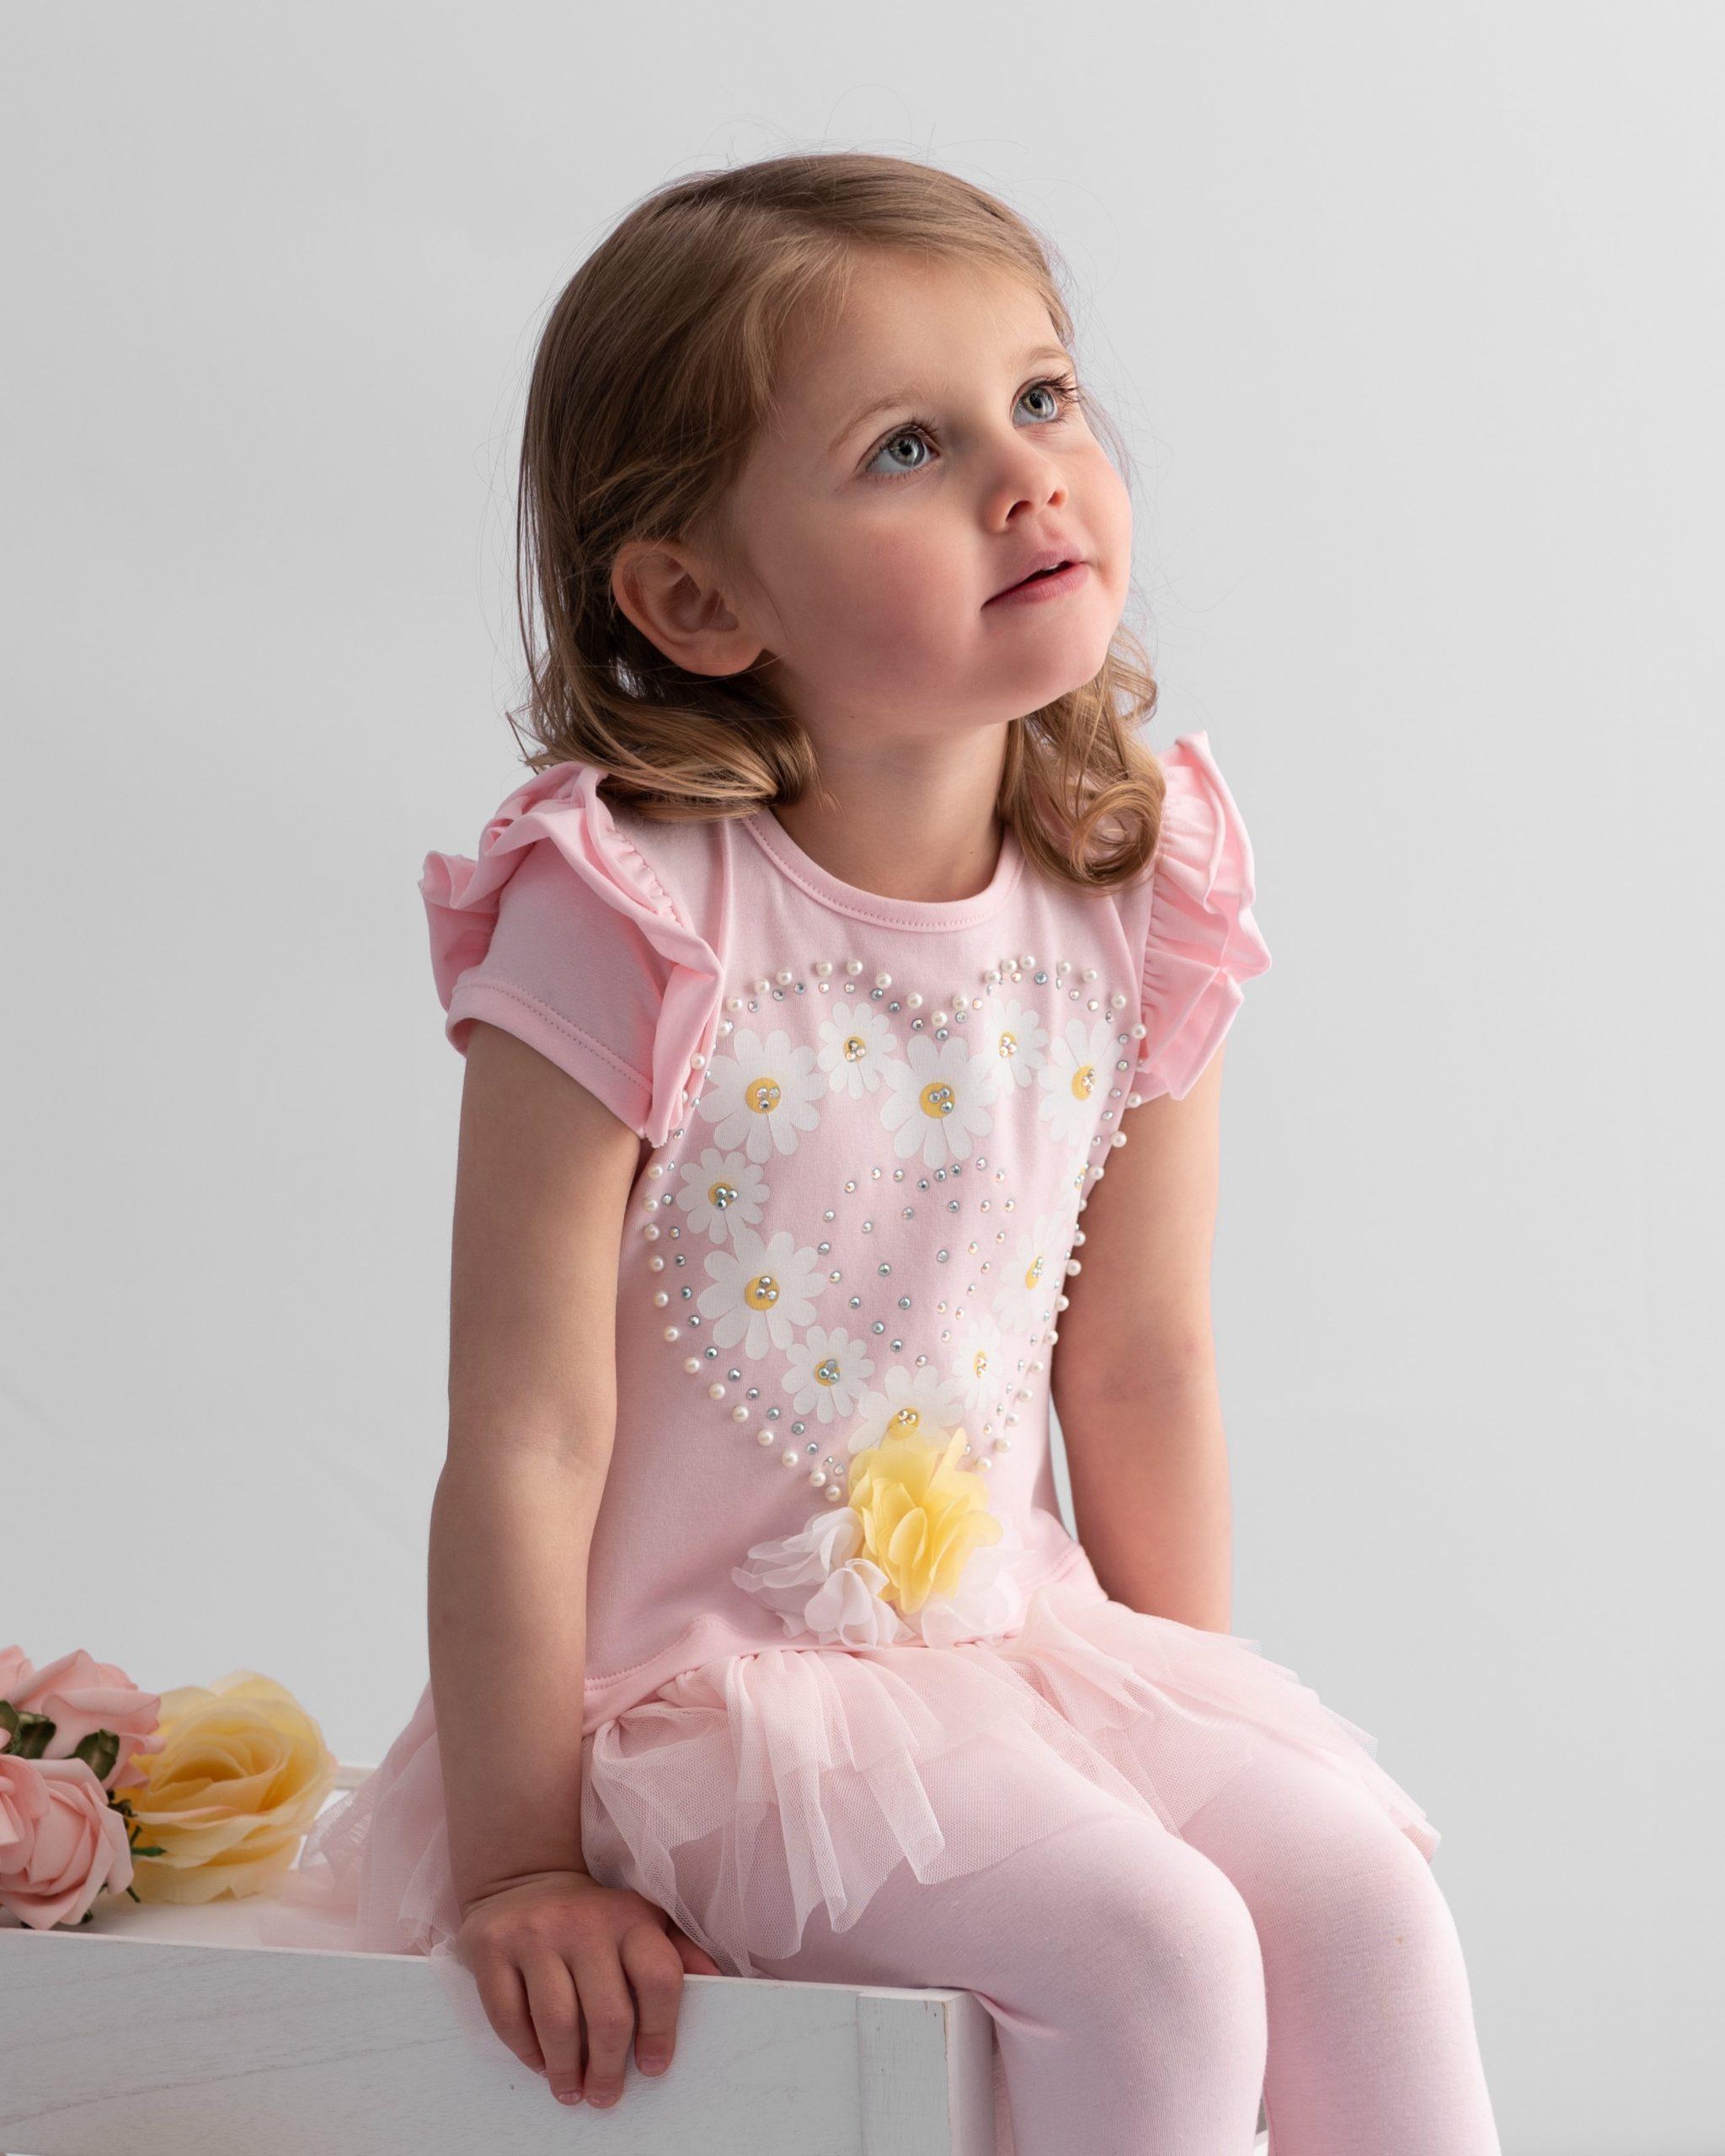 Caramelo Daisy Heart Leggings Set - Kids Life Clothing - Children's  designer clothing